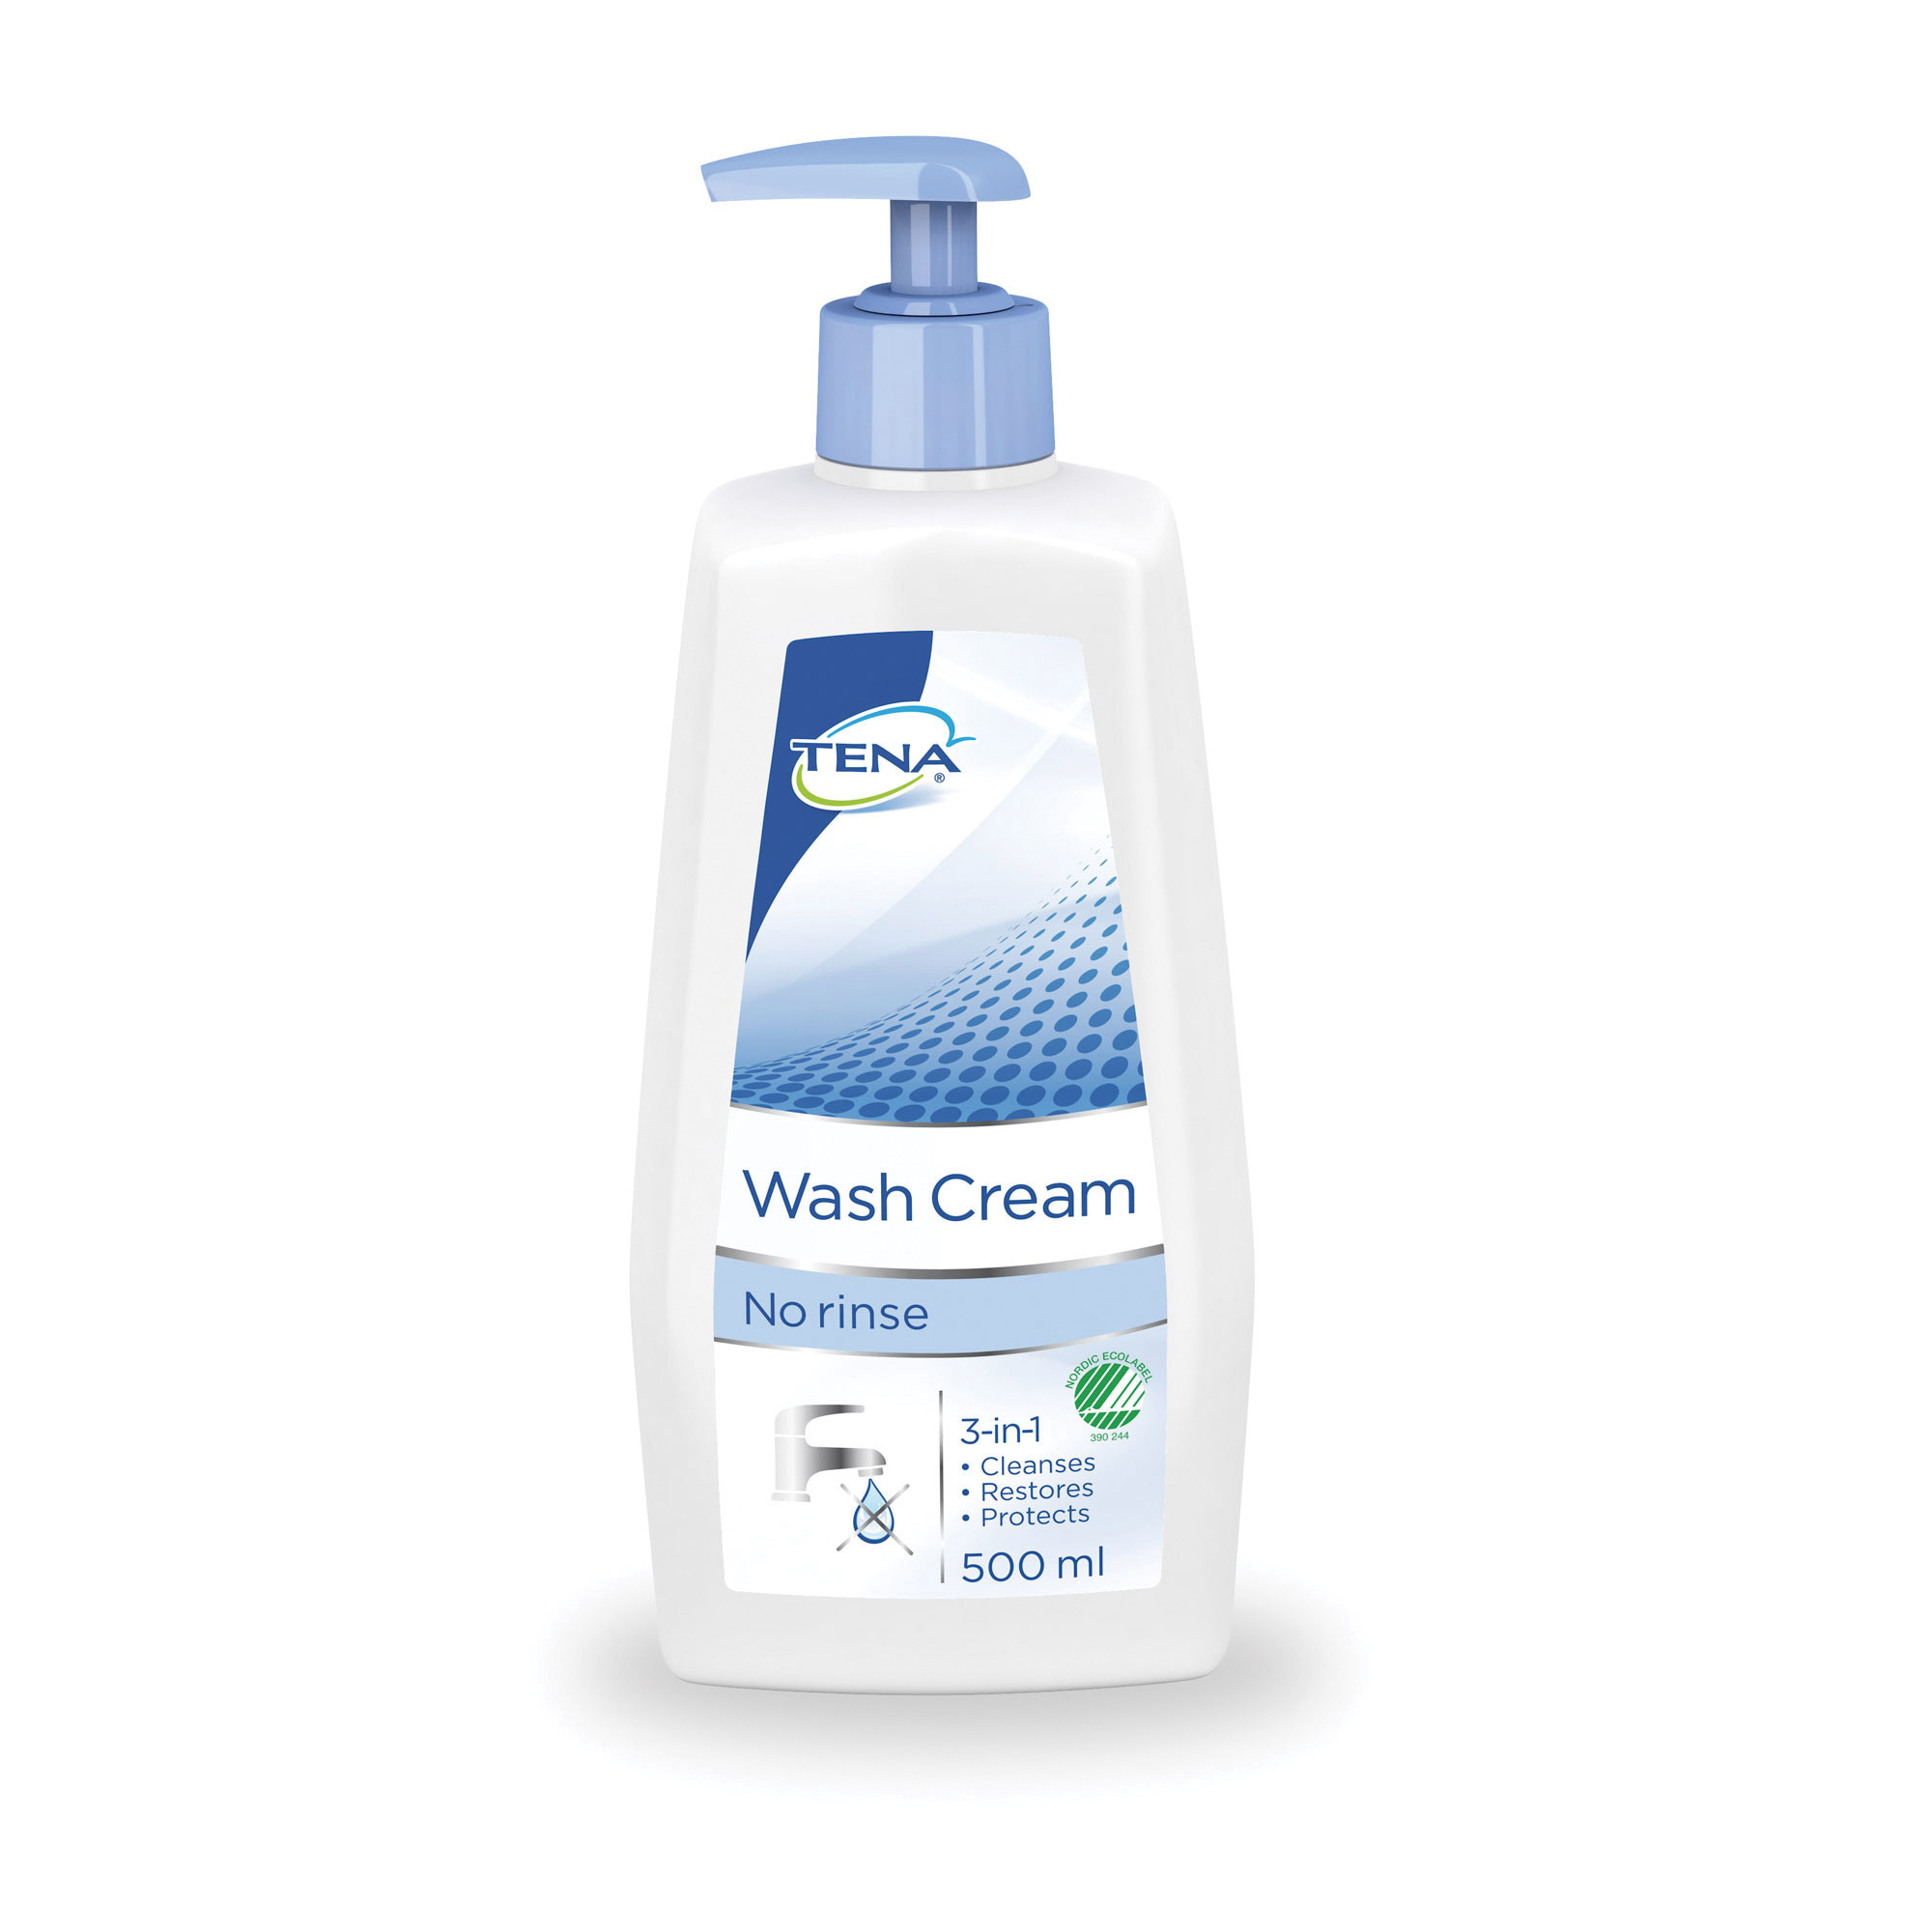 TENA Wash Cream - 500ml